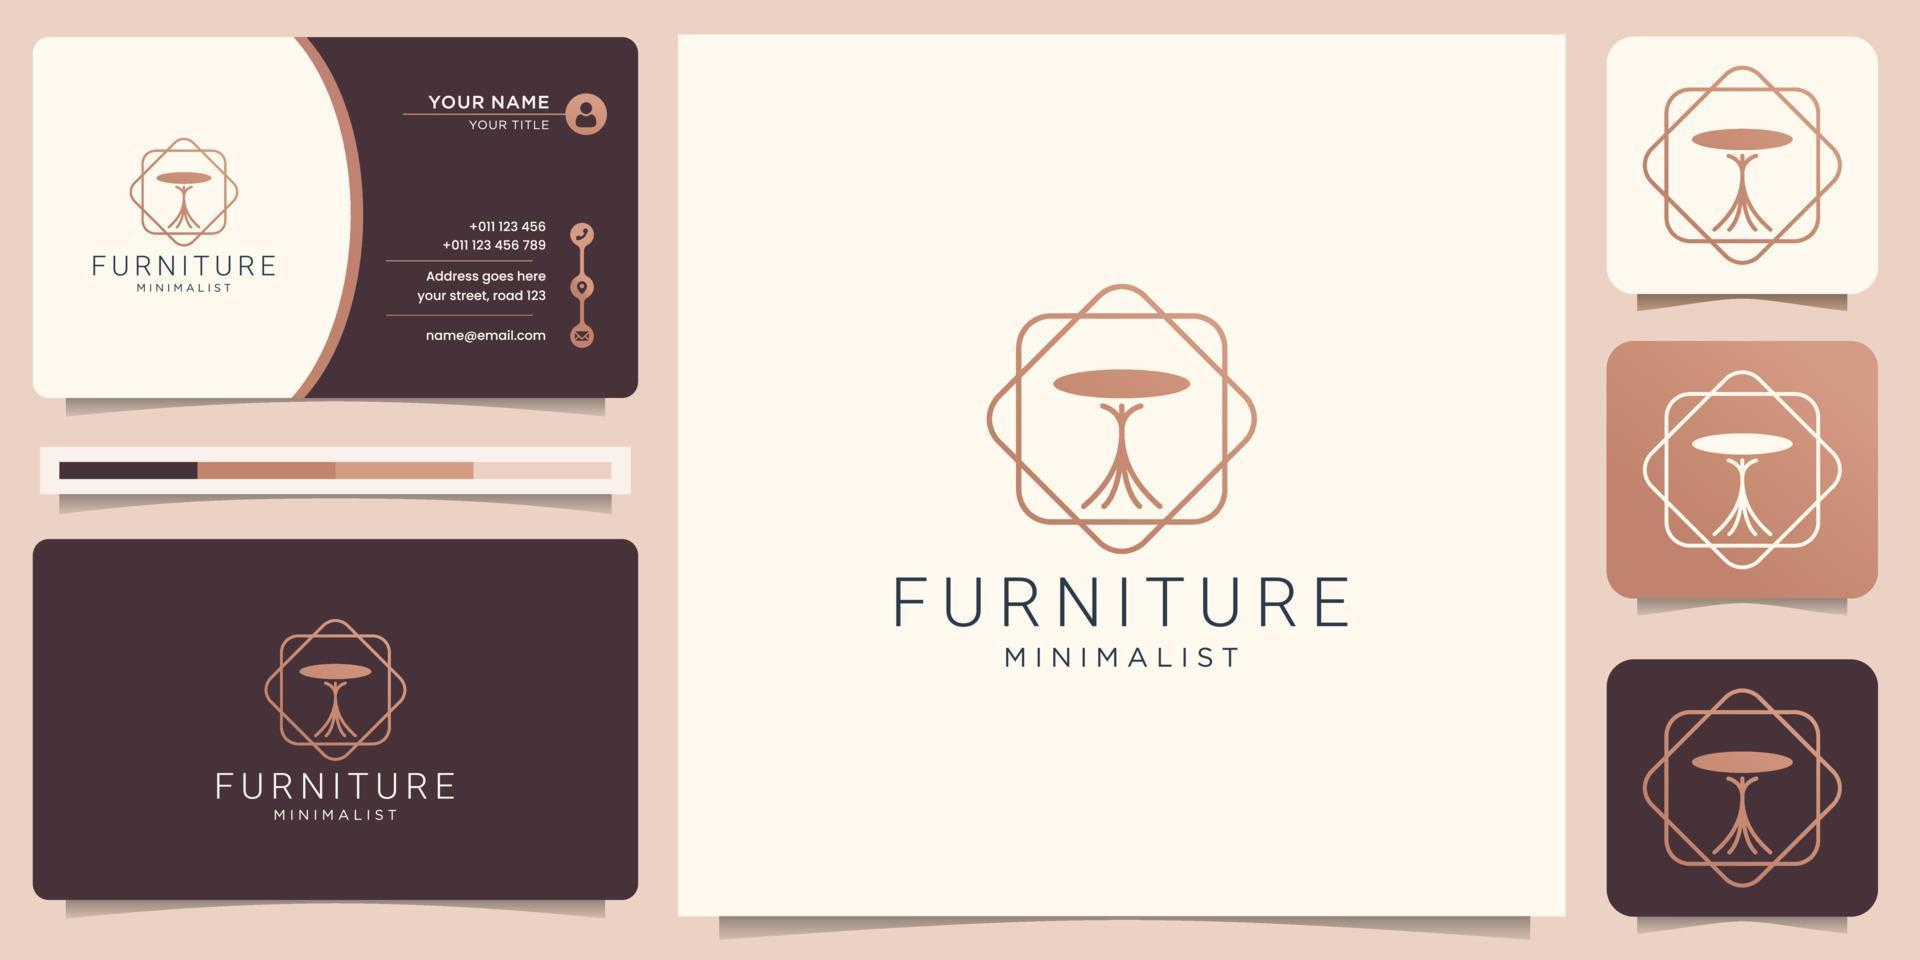 stoel logo meubilair interieur ontwerp met kader minimalistische stijl, meubilair premie inspiratie. vector